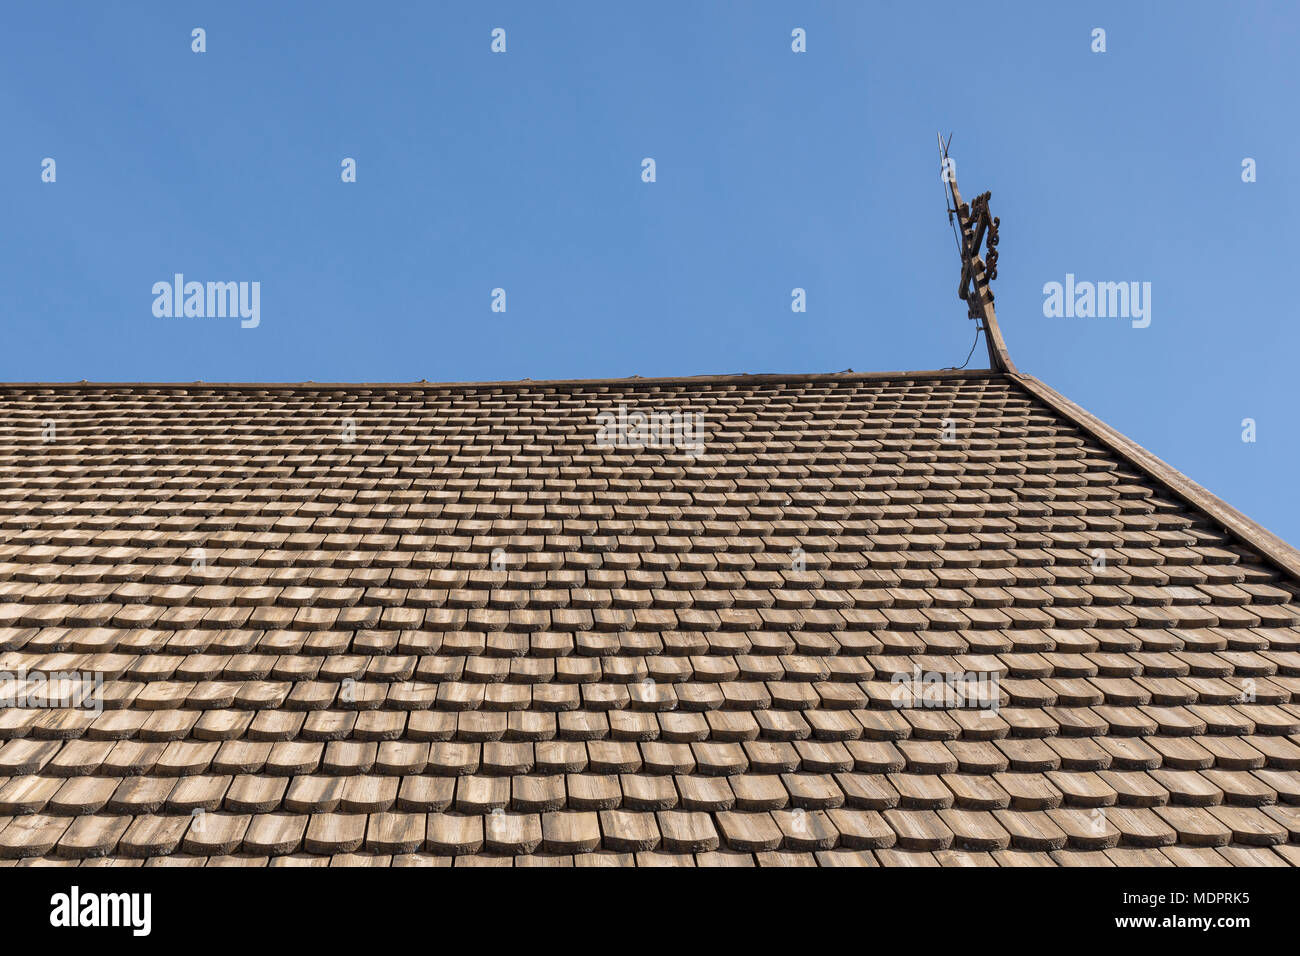 Chiusura del vecchio tetto con un tipo di pannello in legno, dischi di legno trattati con catrame e montato come fisch scala, immagine dal nord della Svezia. Foto Stock